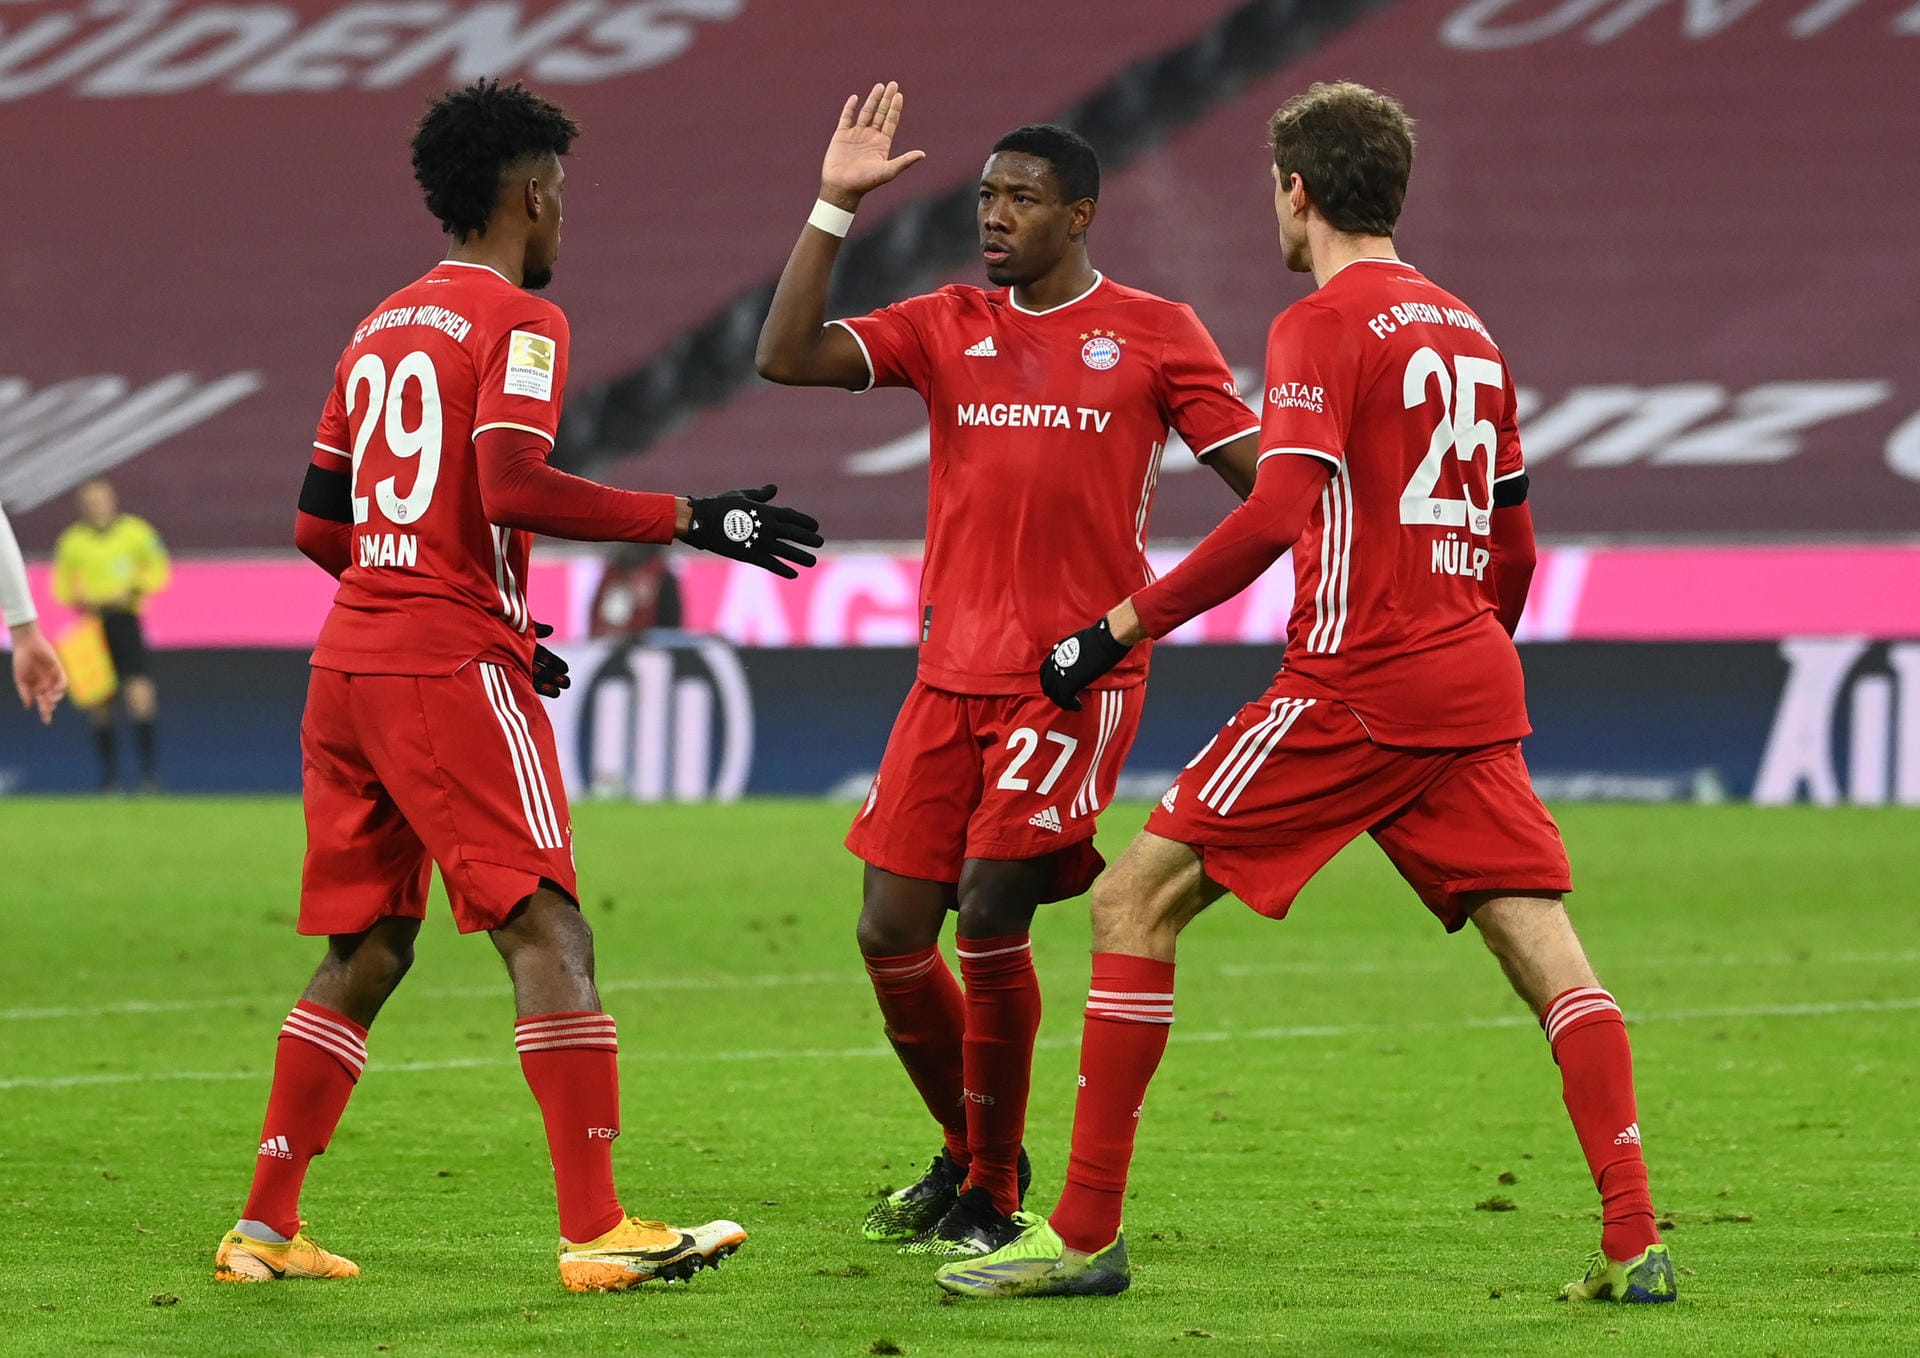 Der FC Bayern verteidigt im Topspiel gegen RB Leipzig die Tabellenführung – nach zäher Leistung. Ein Youngster hat einen Glanzmoment, doch die Abwehr des Rekordmeisters ist zeitweise von der Rolle. Die Münchner in der Einzelkritik.